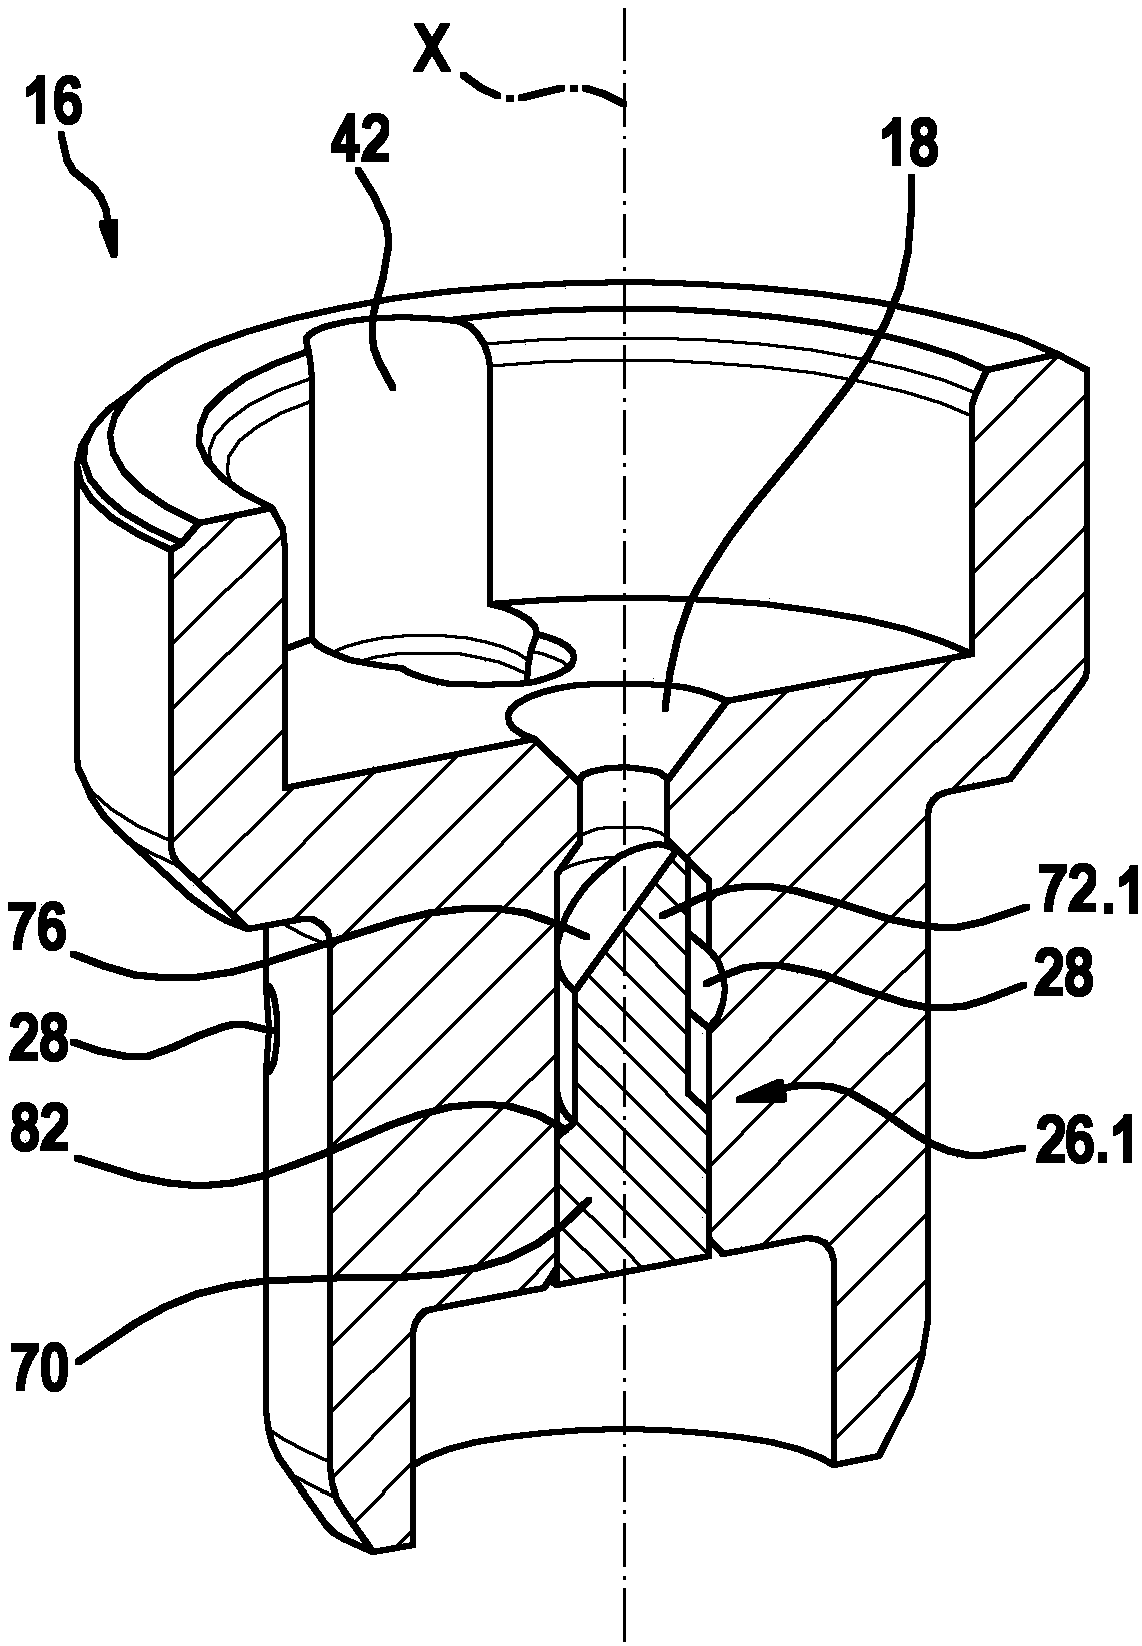 solenoid actuated valve